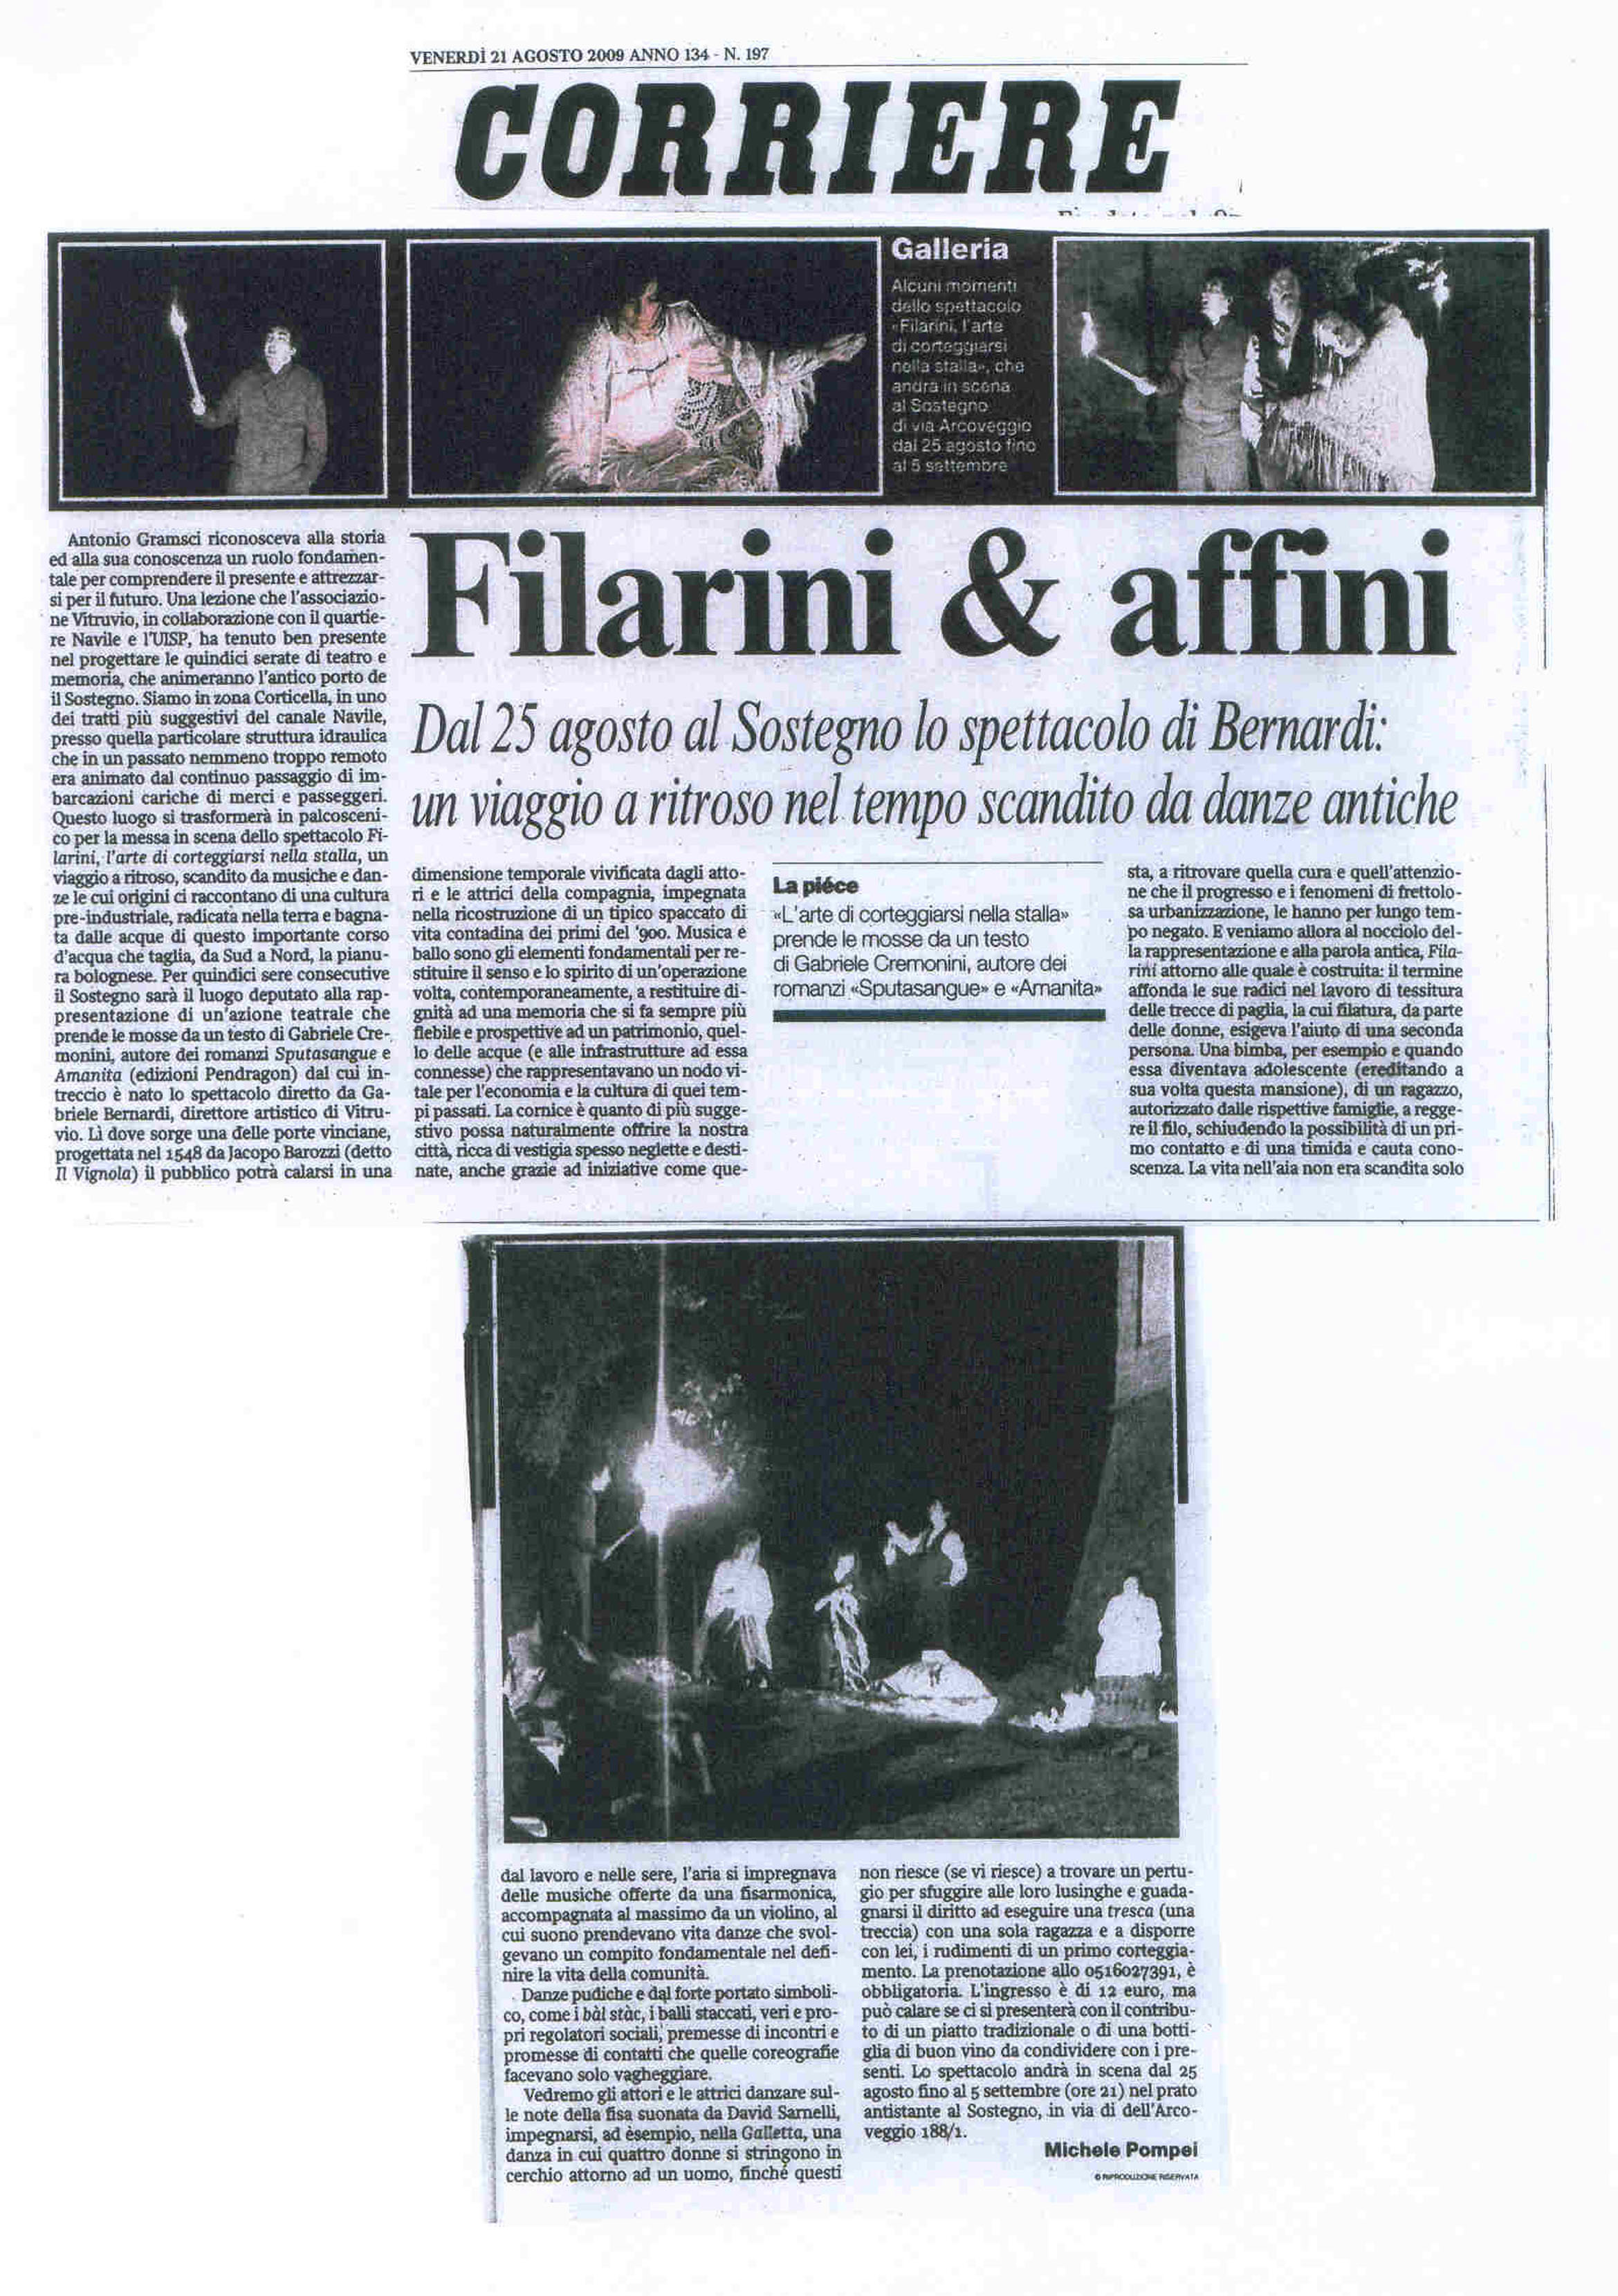 Corriere 21-8-09